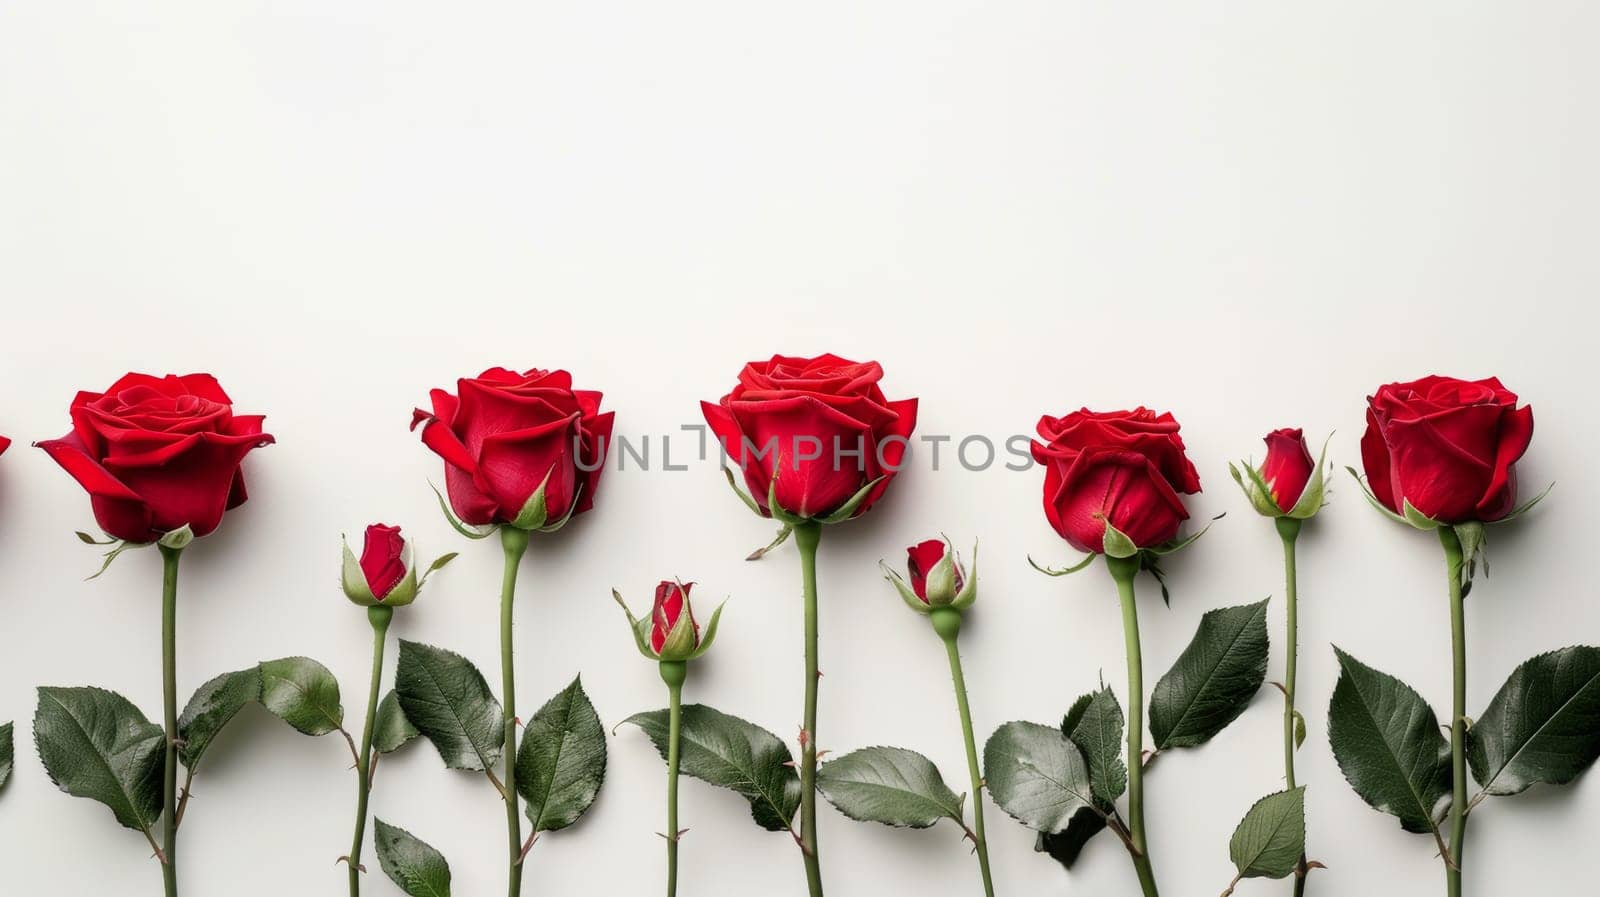 Elegant Red Roses on White Background.